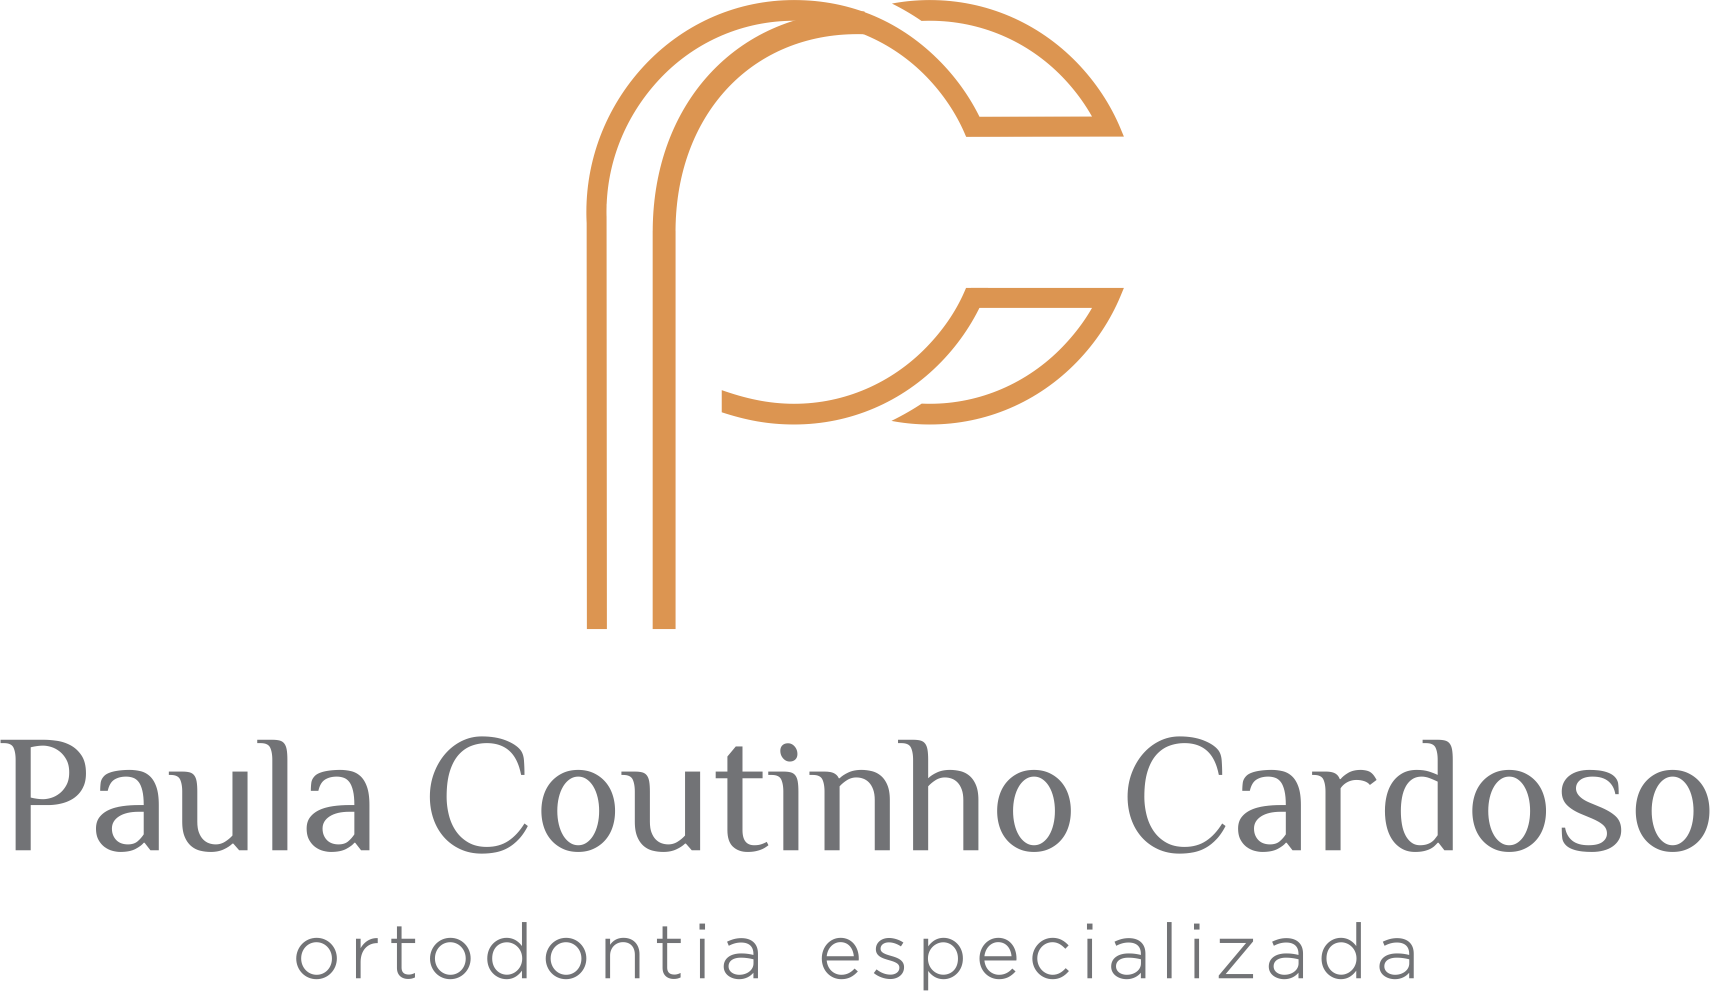 Dra. Paula Coutinho Cardoso